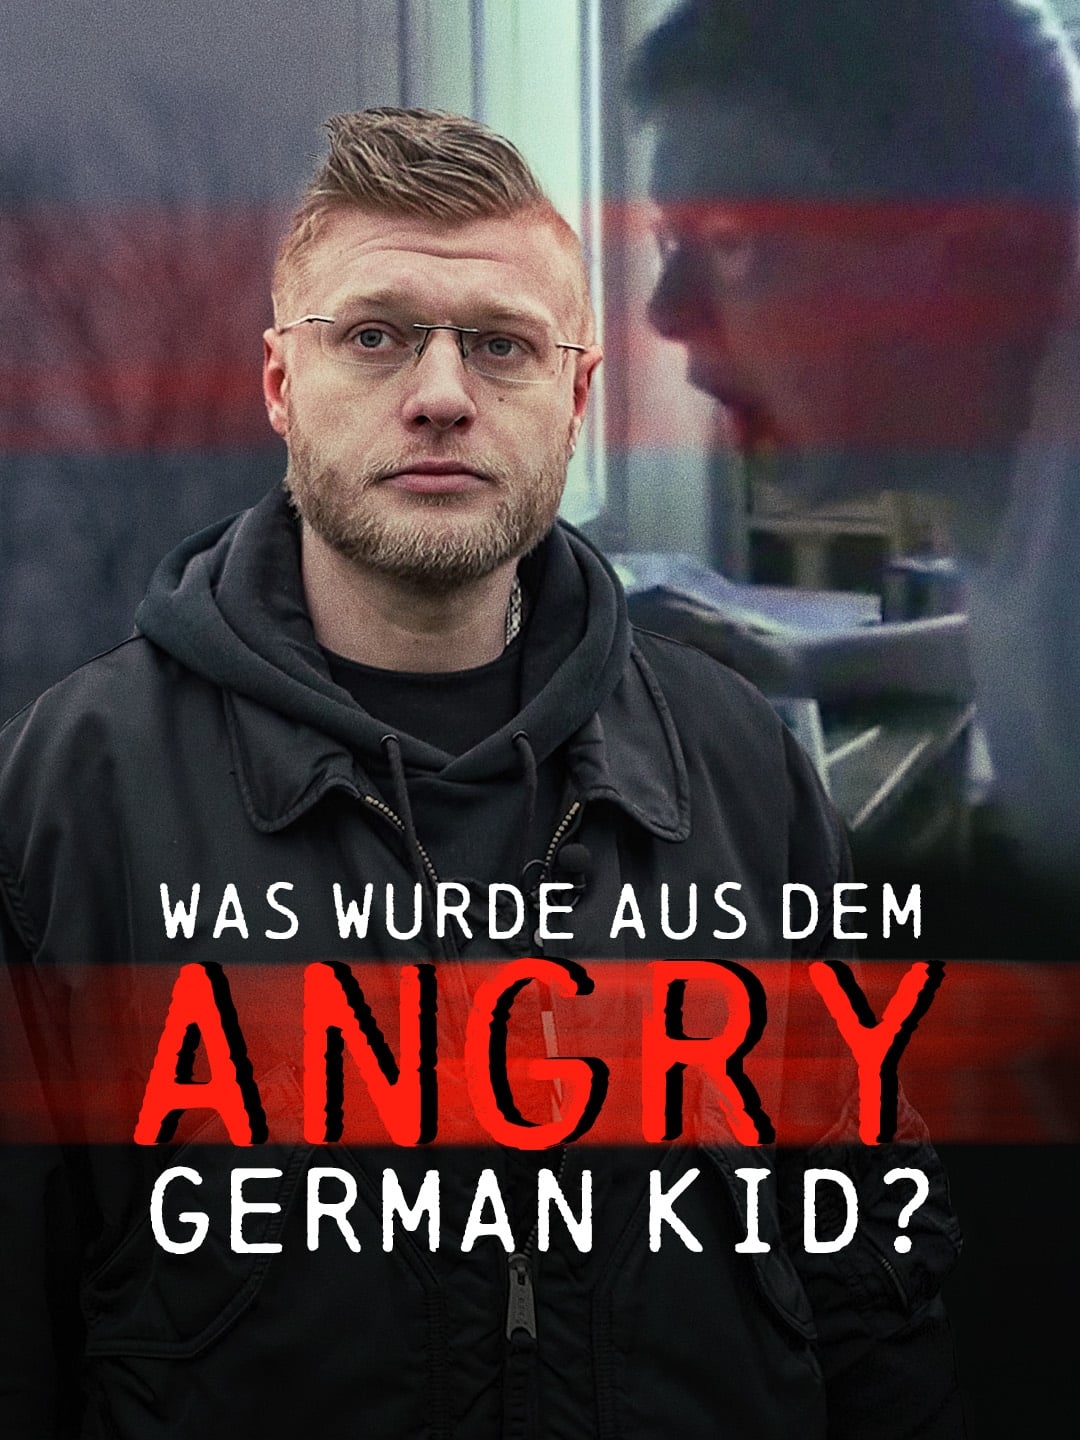 Ausgerastet und abgestürzt: Der Fall des Angry German Kid